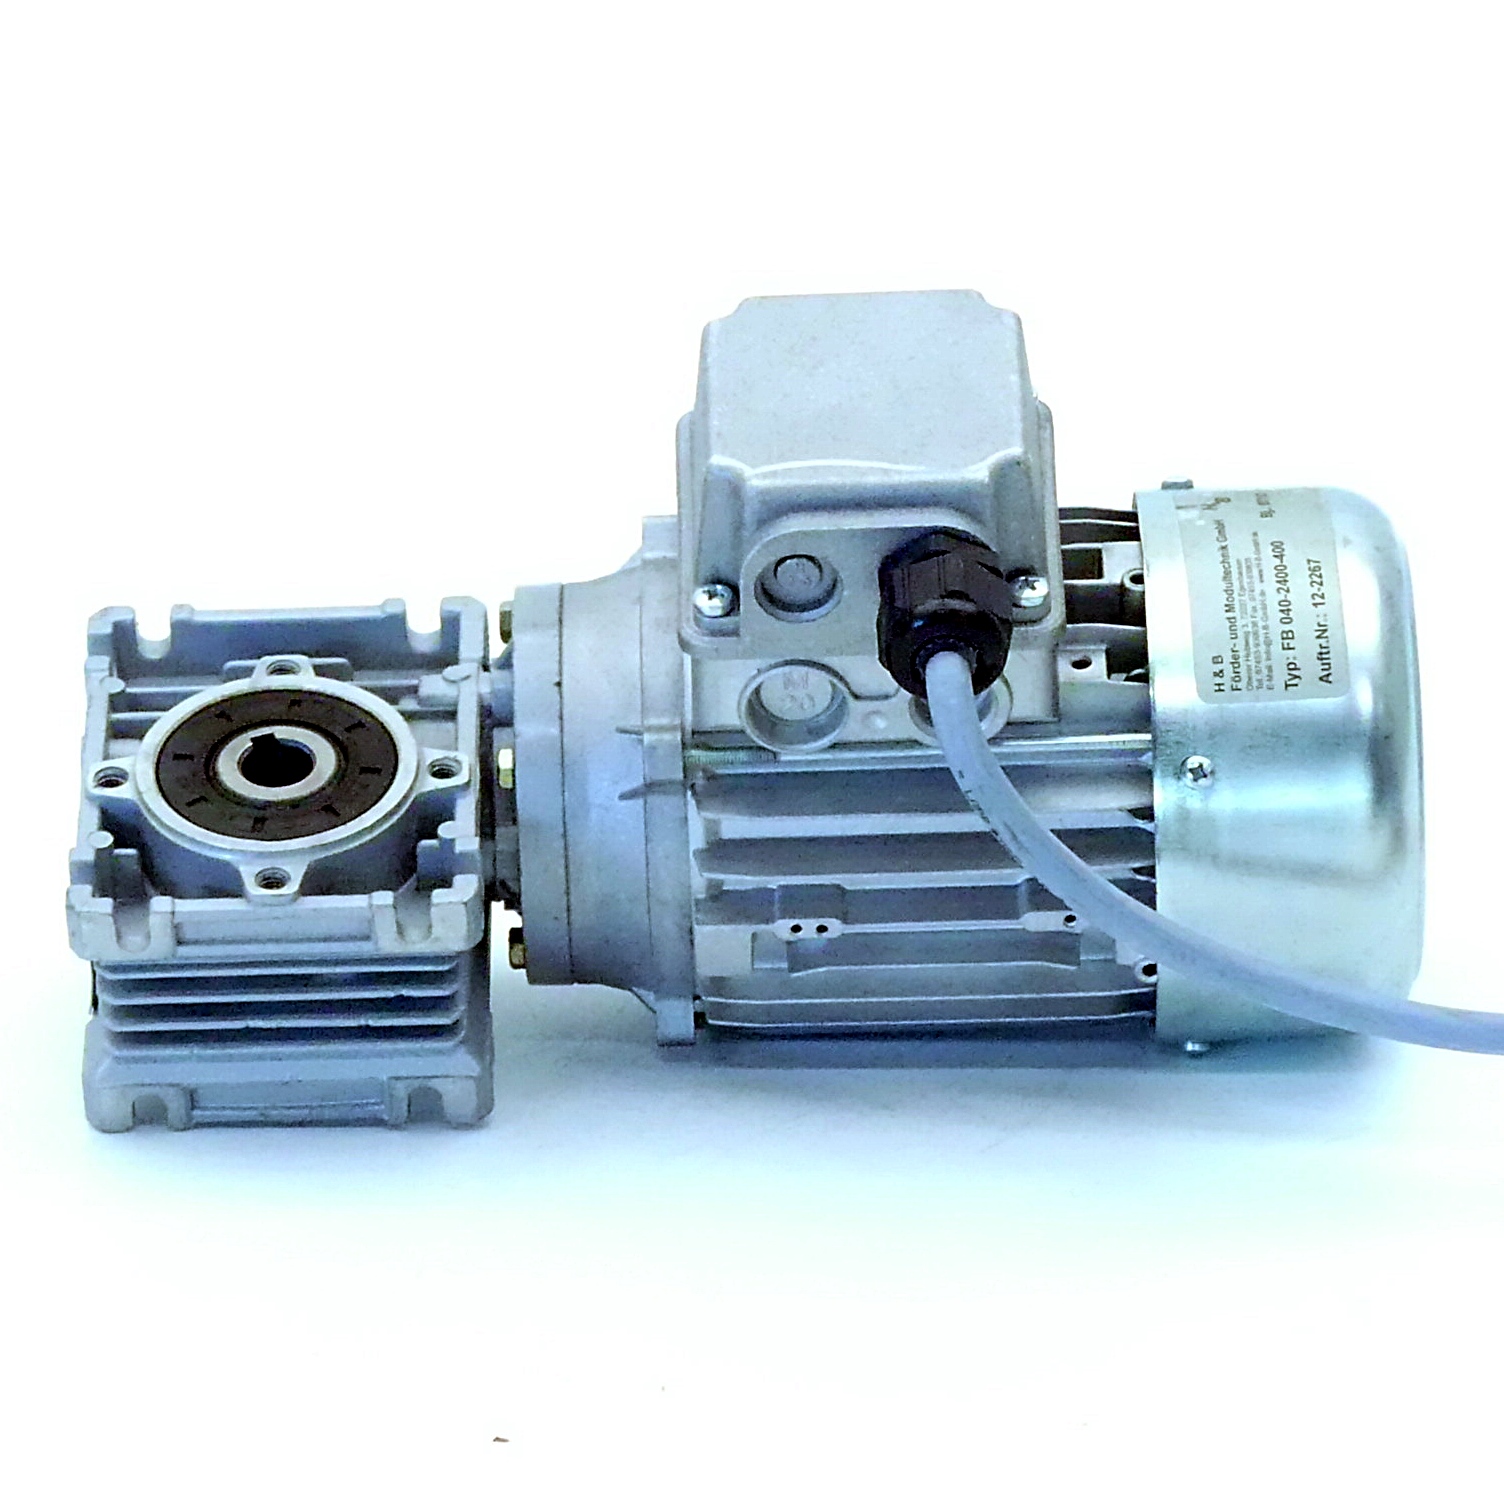 Getriebemotor M65b4 